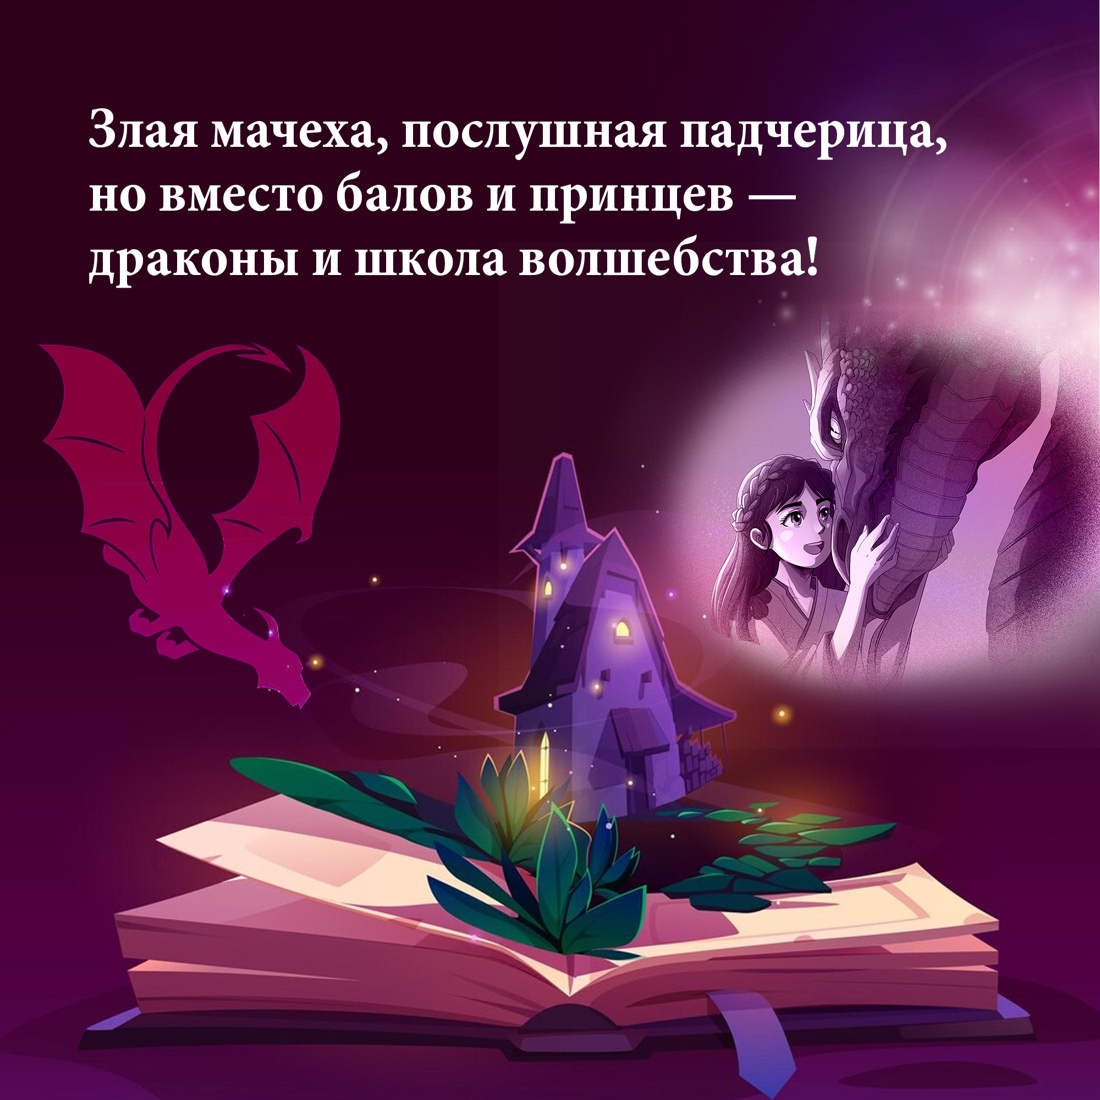 Промо материал к книге "Алиана, спасительница драконов" №2